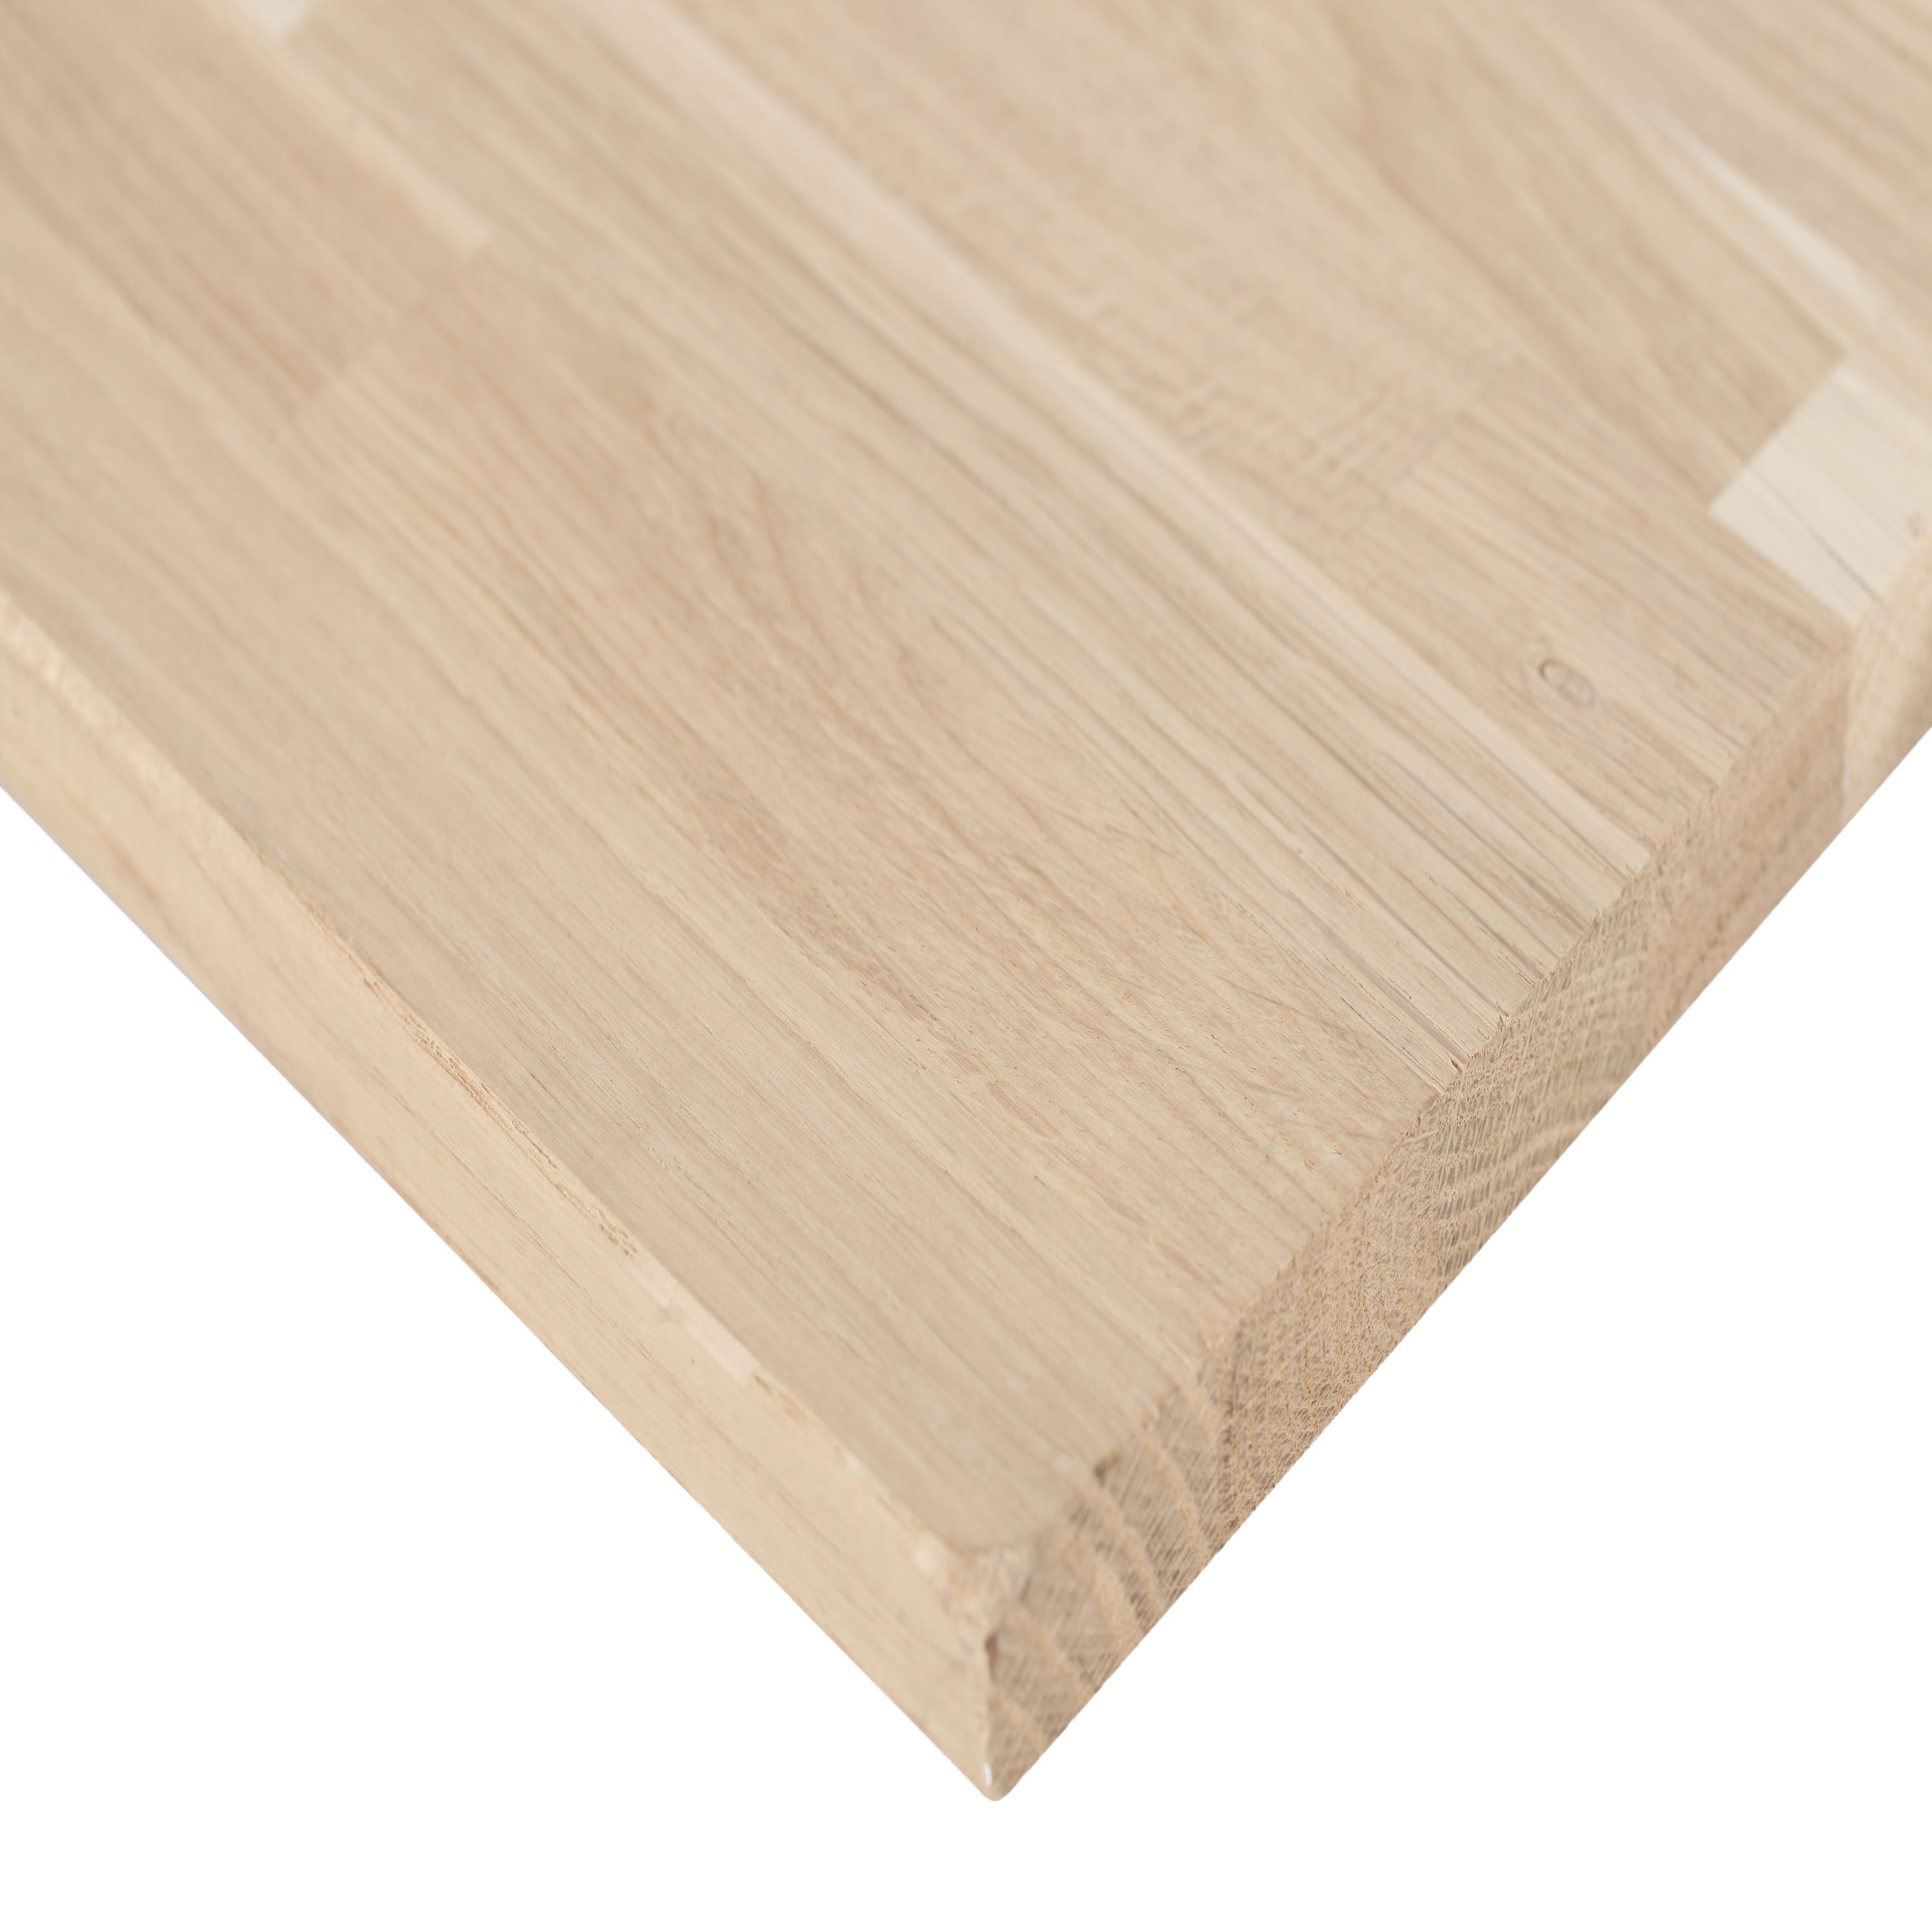 Encargar tableros macizos de madera de roble rústico a medida